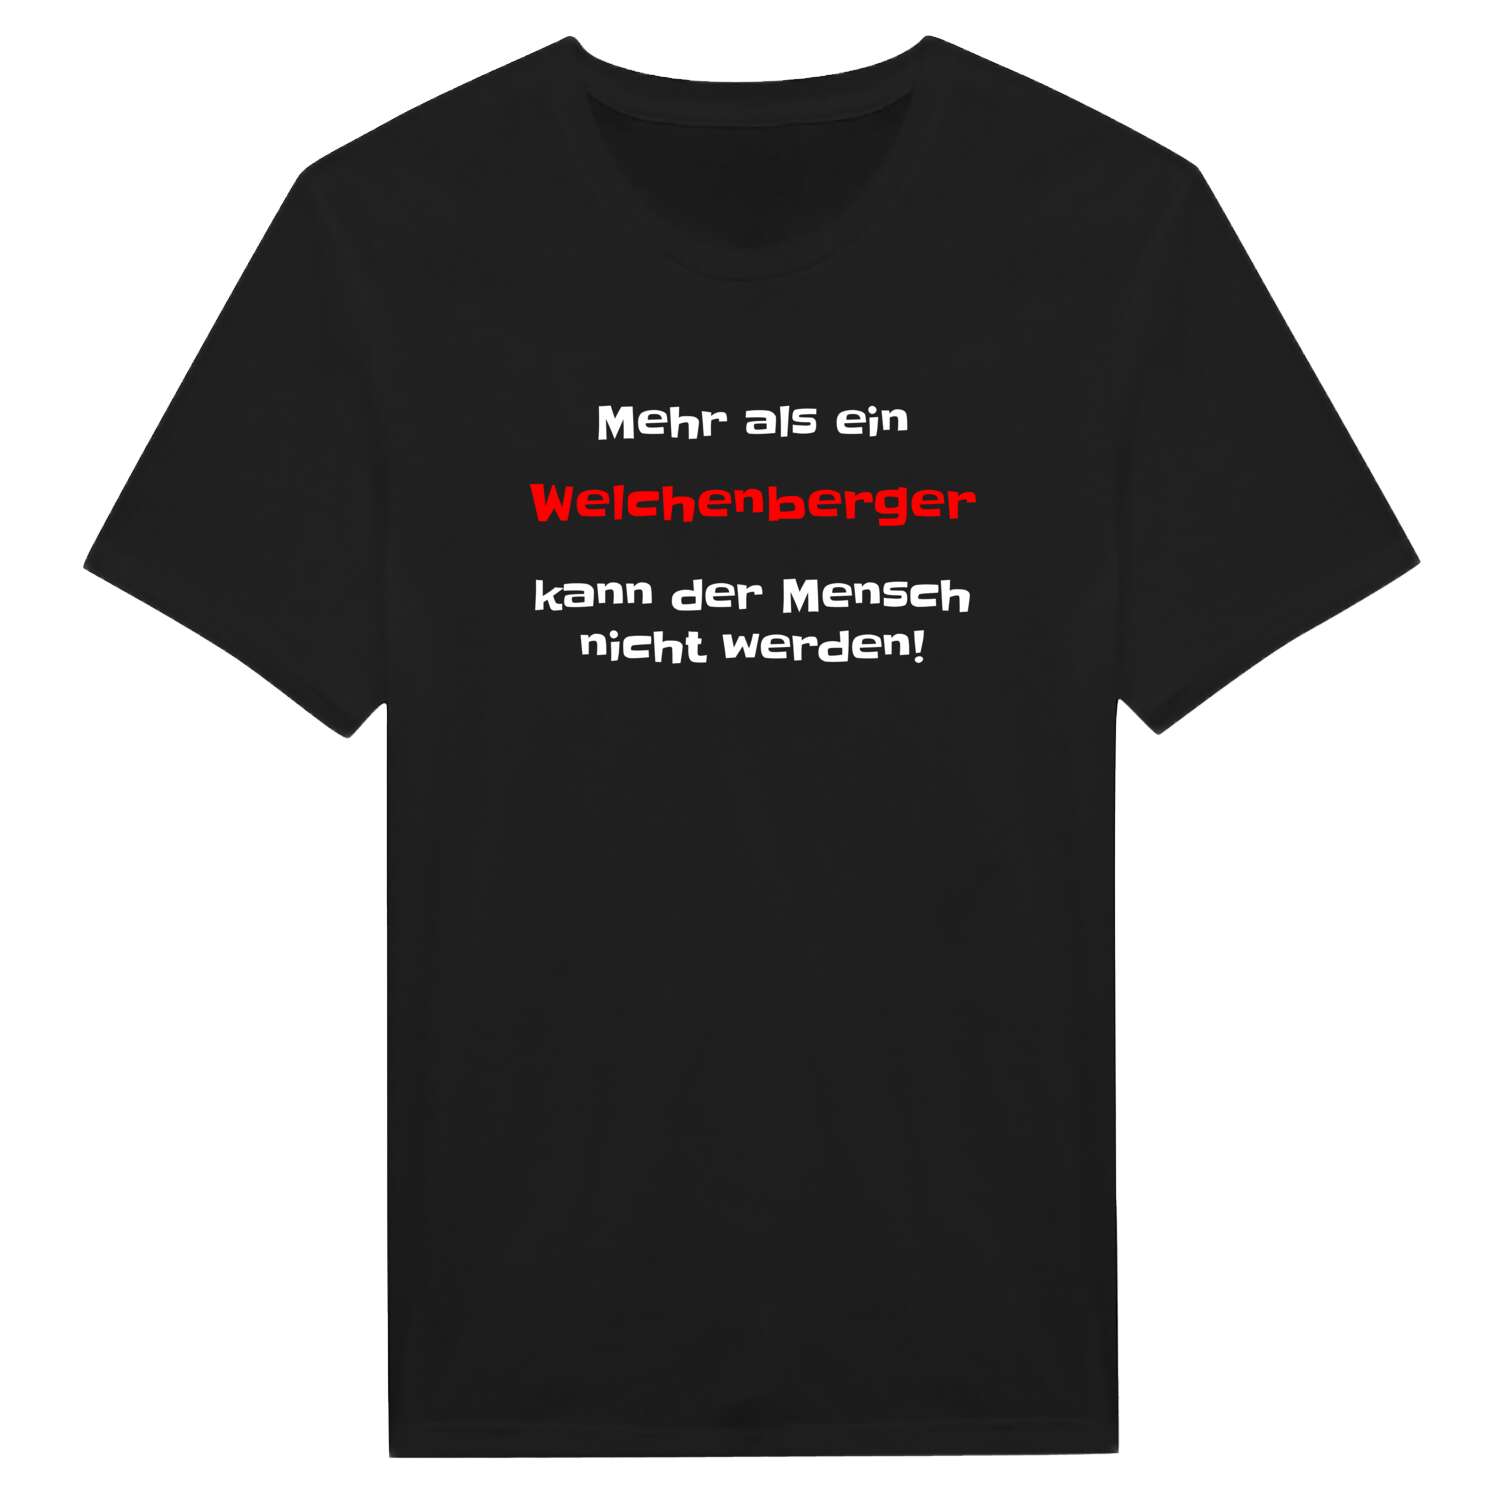 Welchenberg T-Shirt »Mehr als ein«